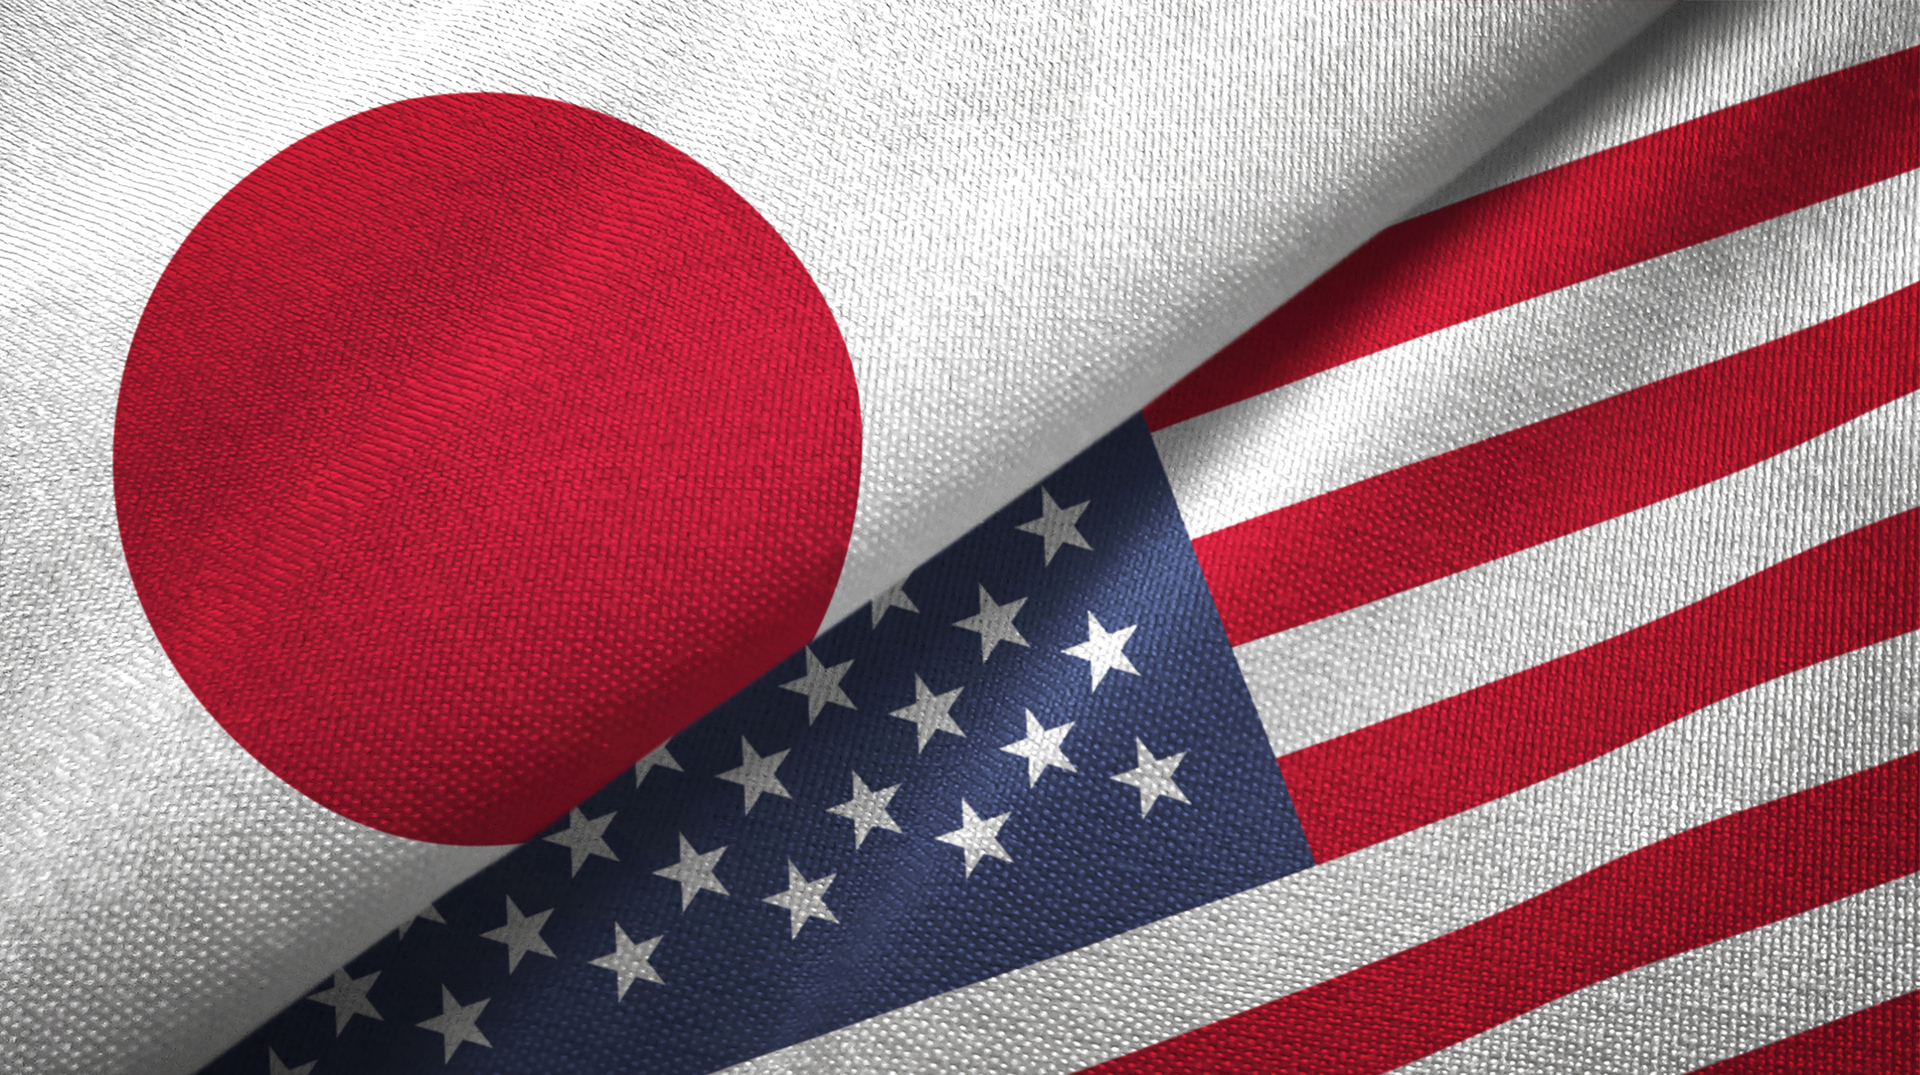 الولايات المتحدة تعتزم توقيع وثيقة تلزمها بالدفاع عن اليابان حتى باستخدام الأسلحة النووية